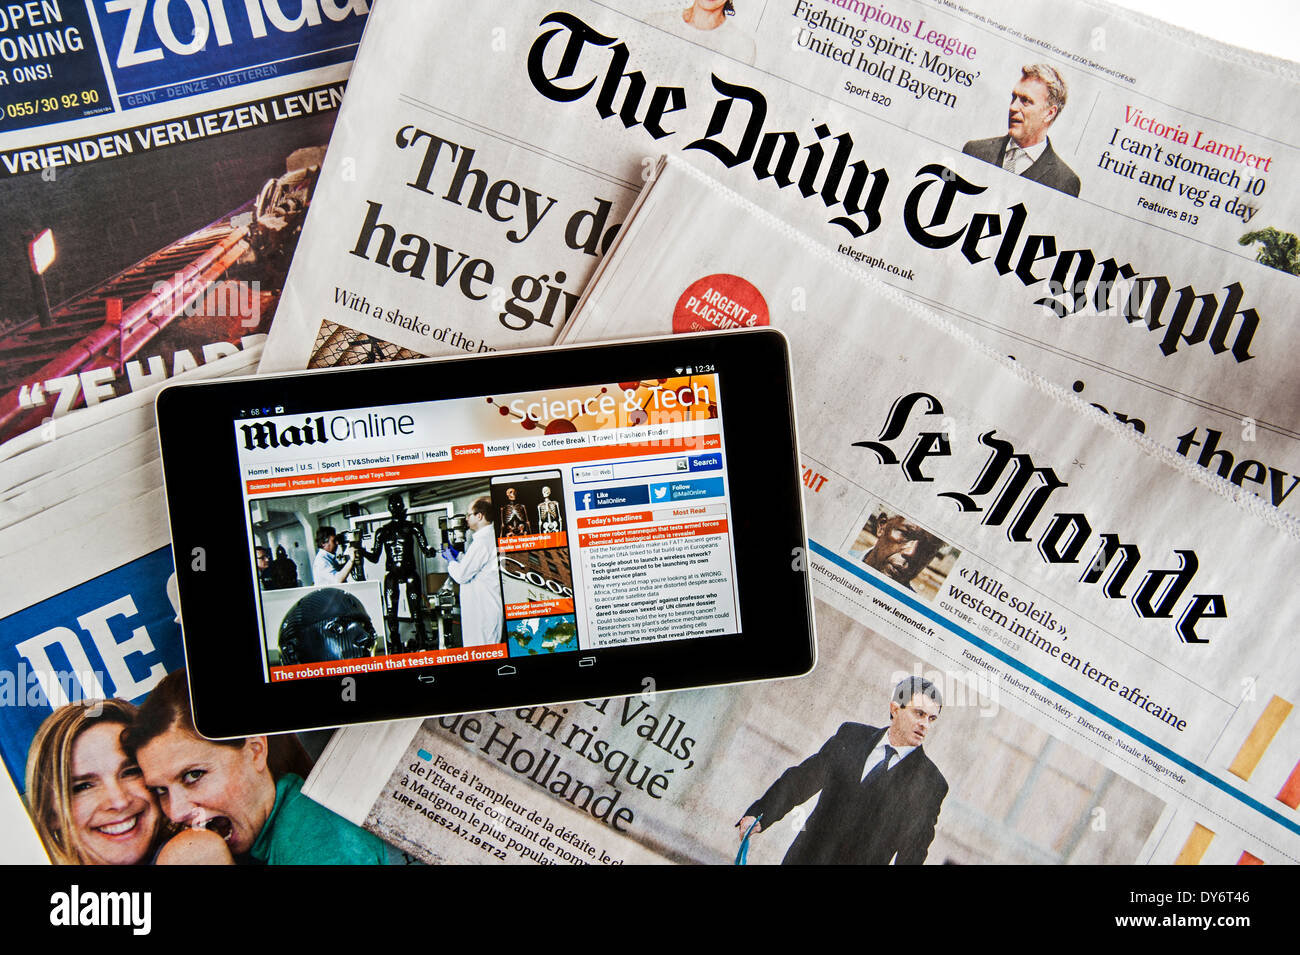 Touchscreen digitale compressa con posta elettronica Online news sulla sommità del britannico Daily Telegraph e il francese Le Monde quotidiani europei Foto Stock